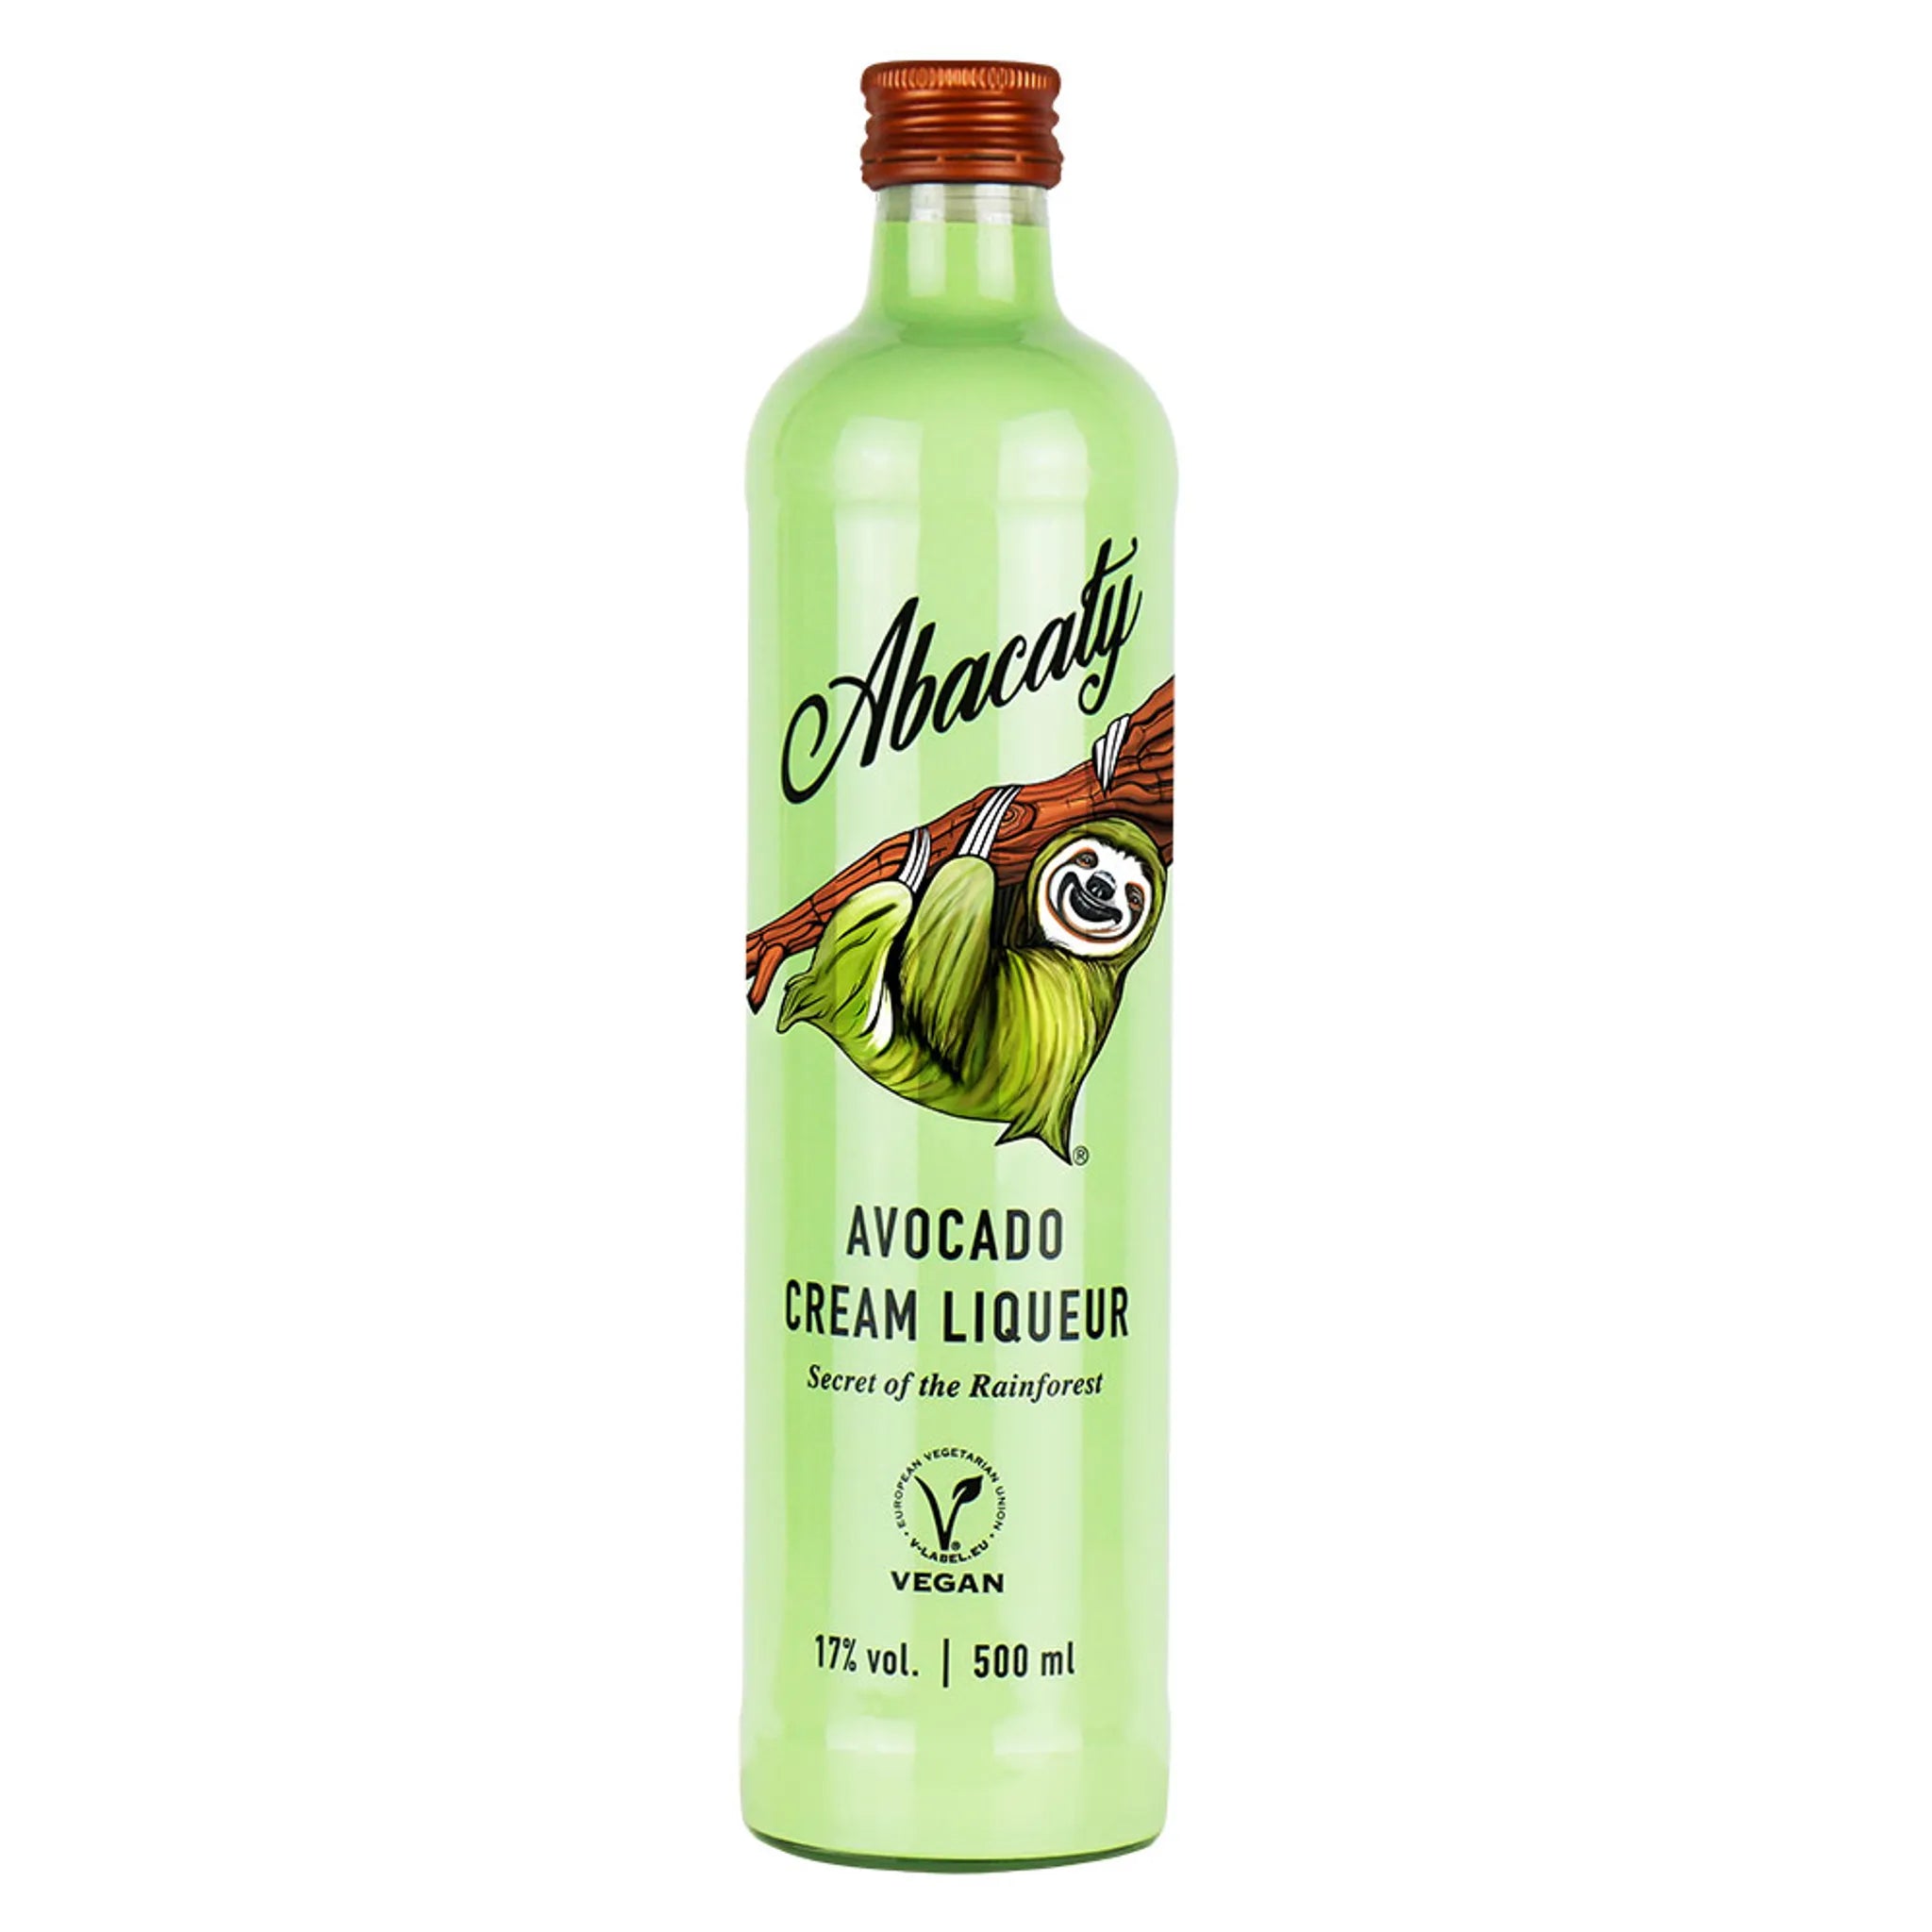 ABACATY Avocado Cream Liqueur